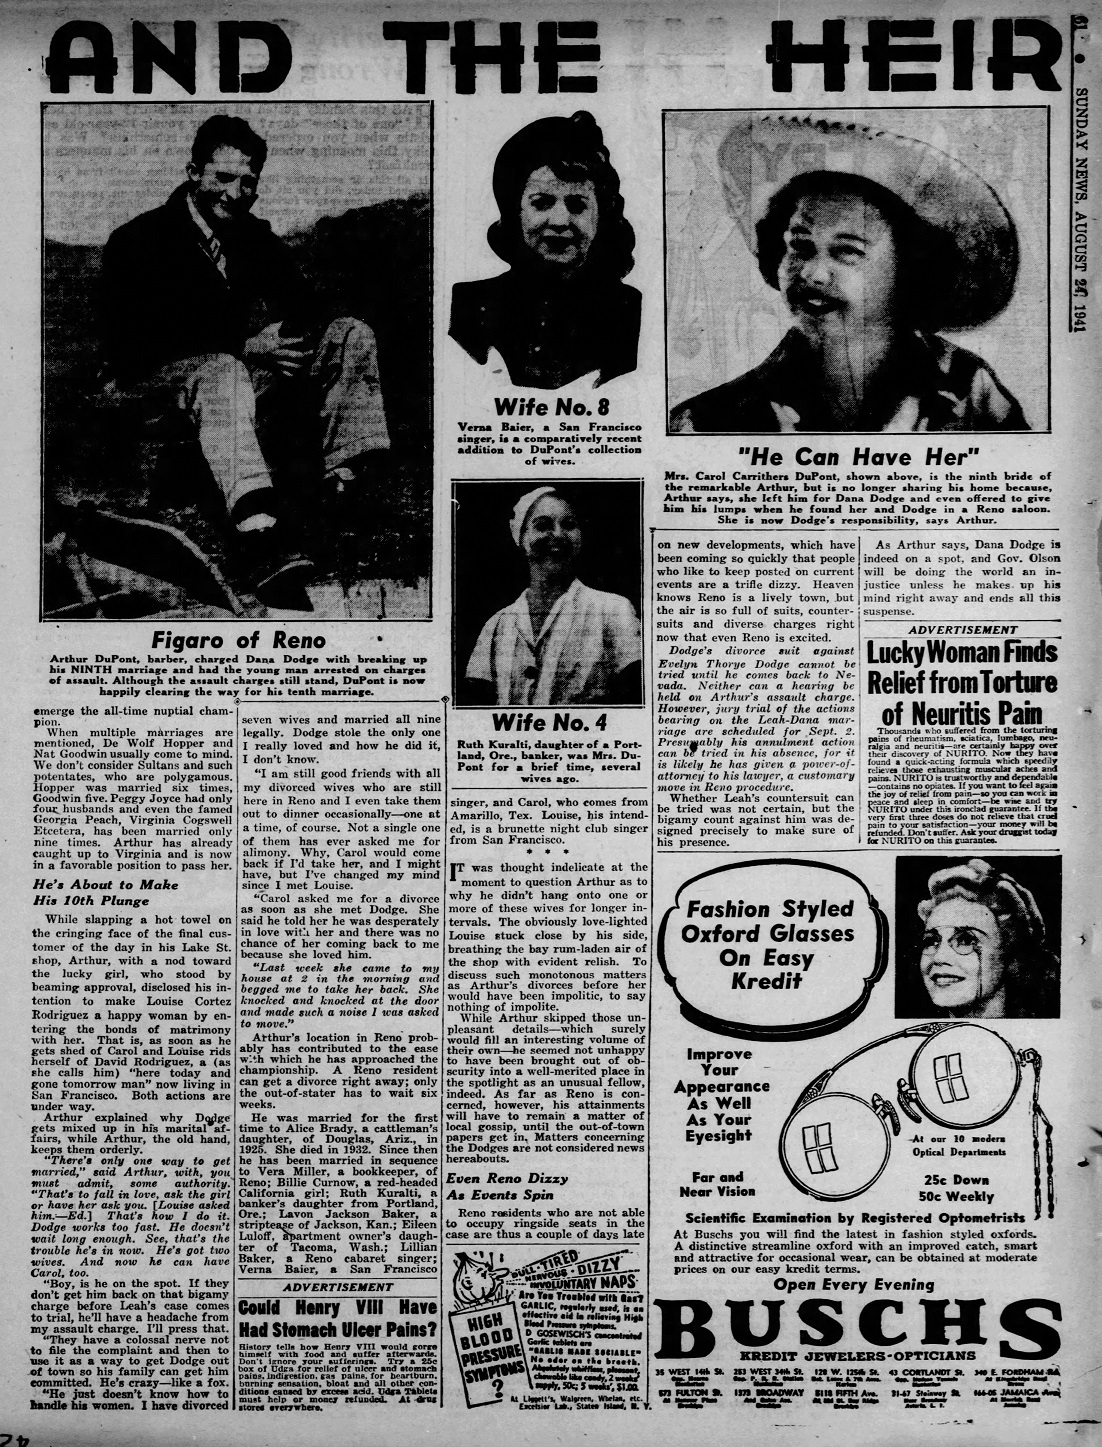 Daily_News_Sun__Aug_24__1941_(11).jpg